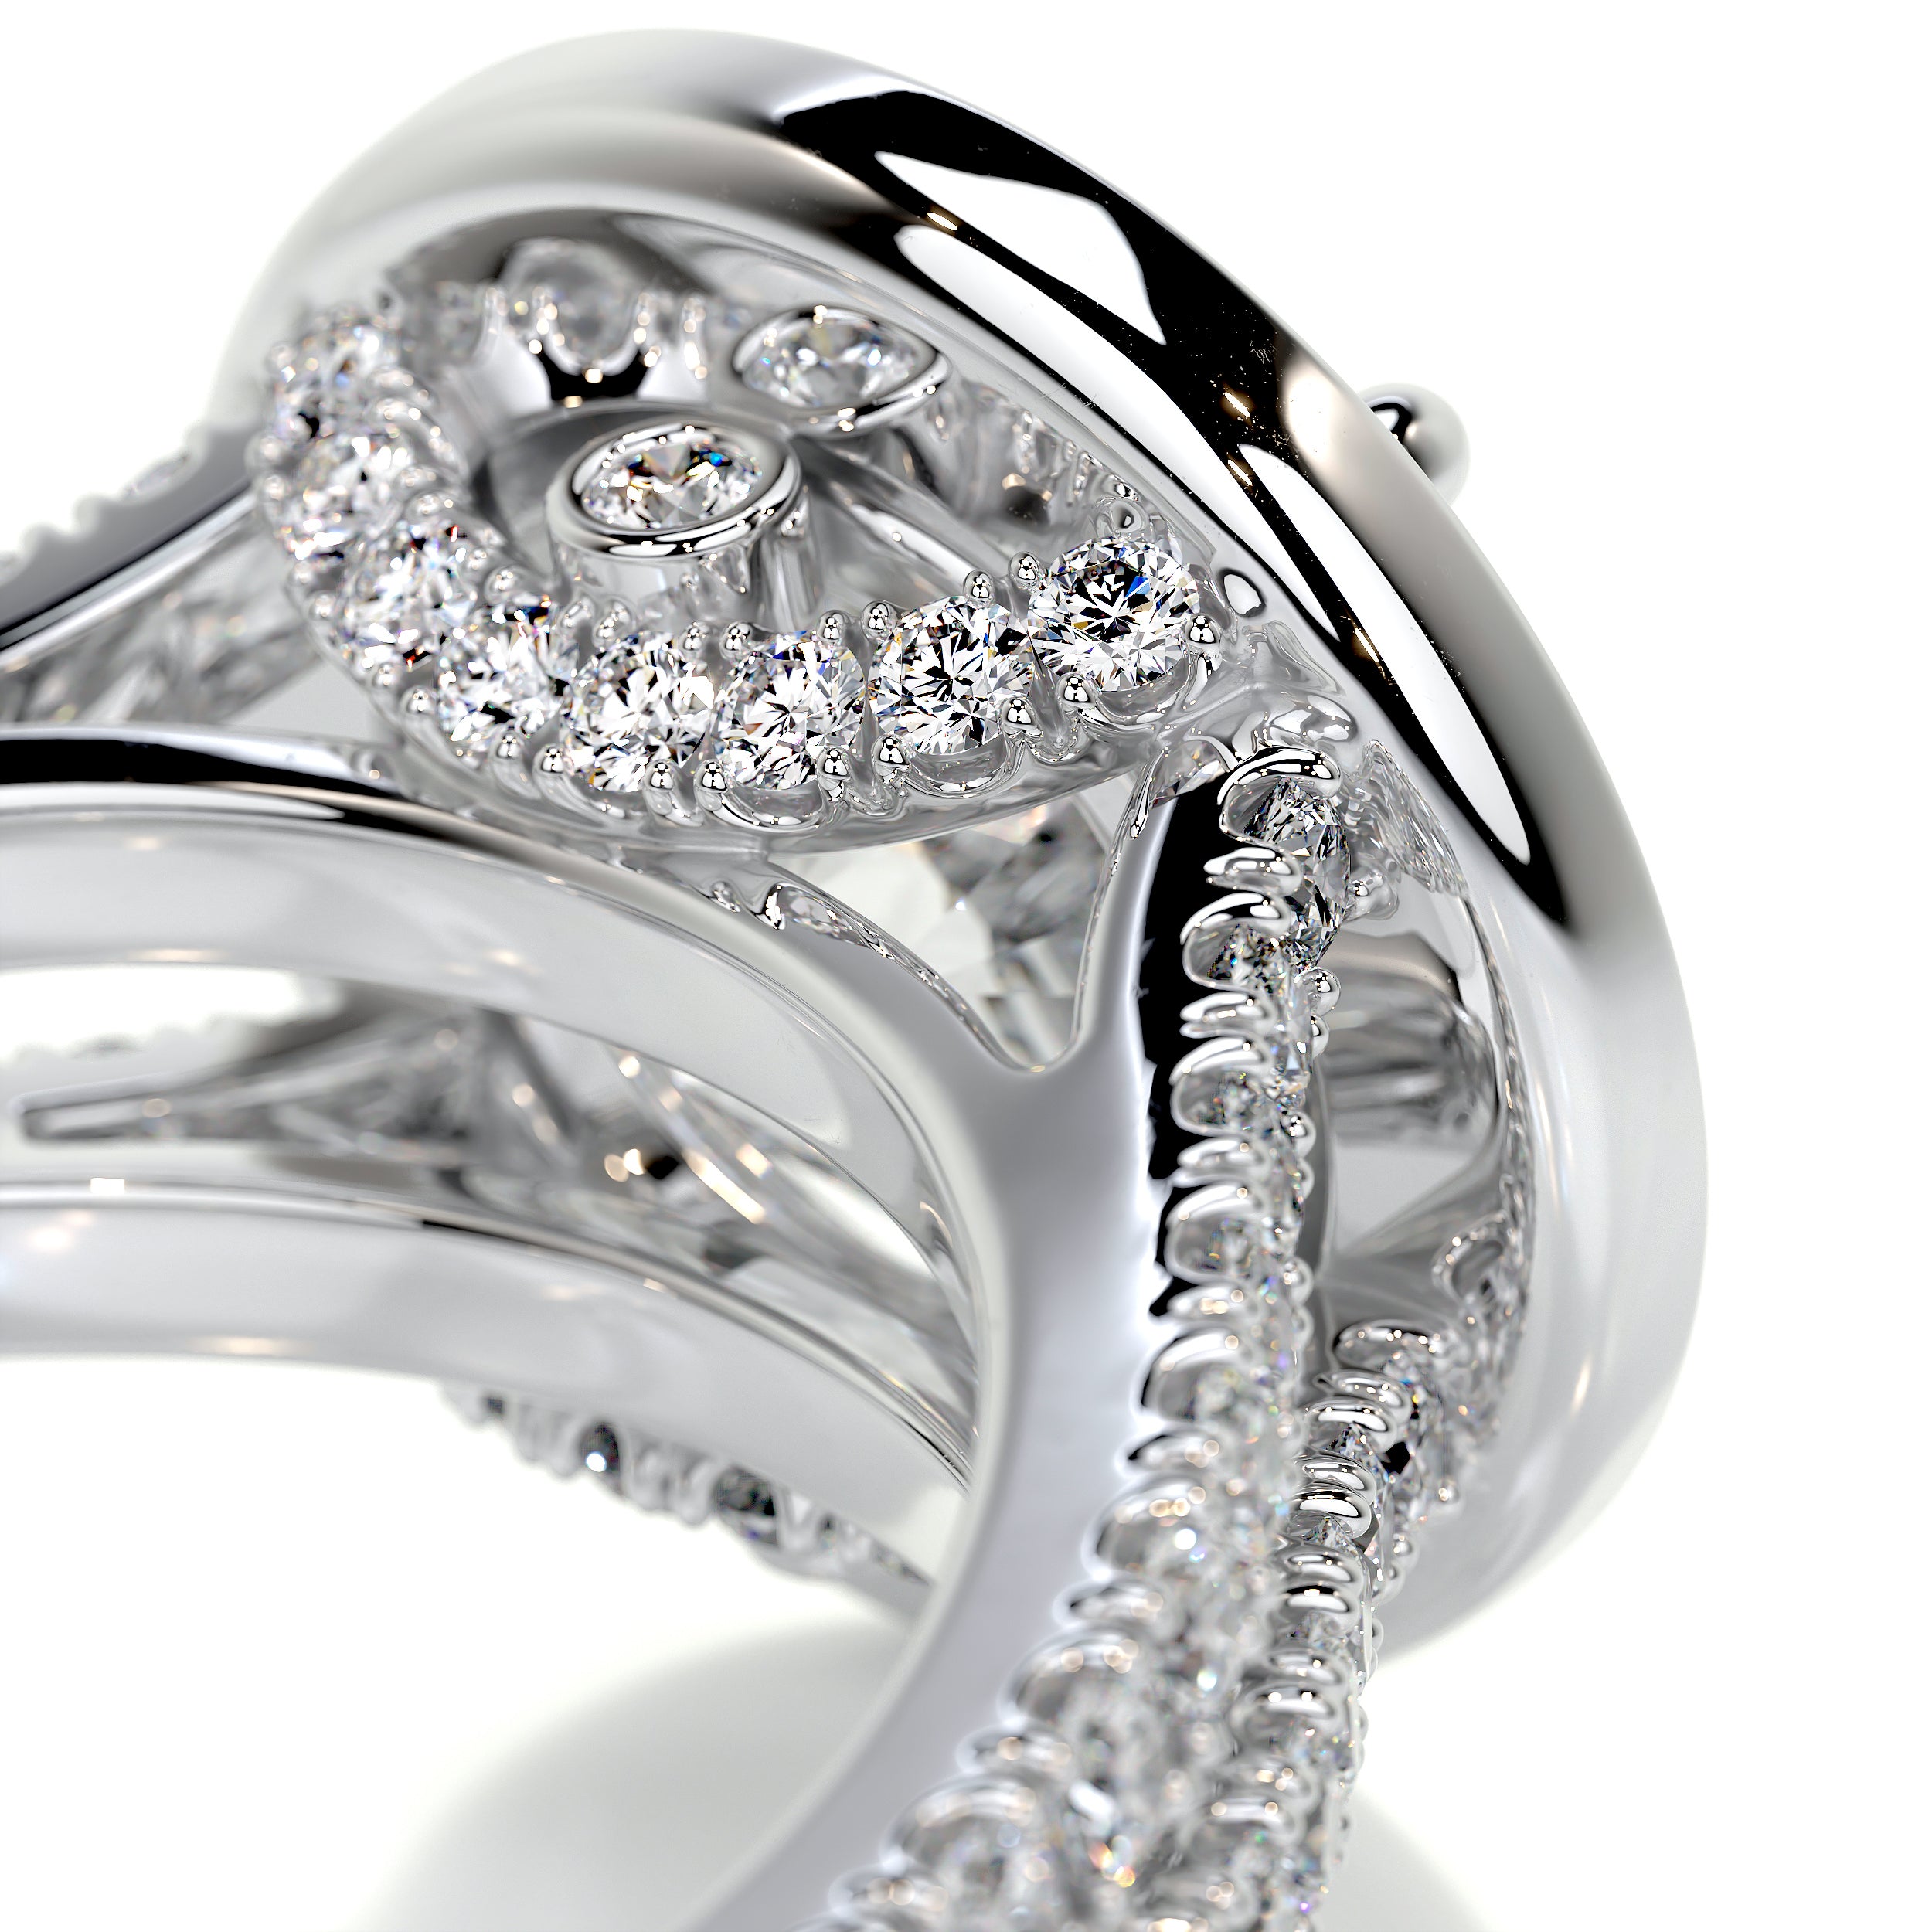 Camilla Diamond Engagement Ring -Platinum